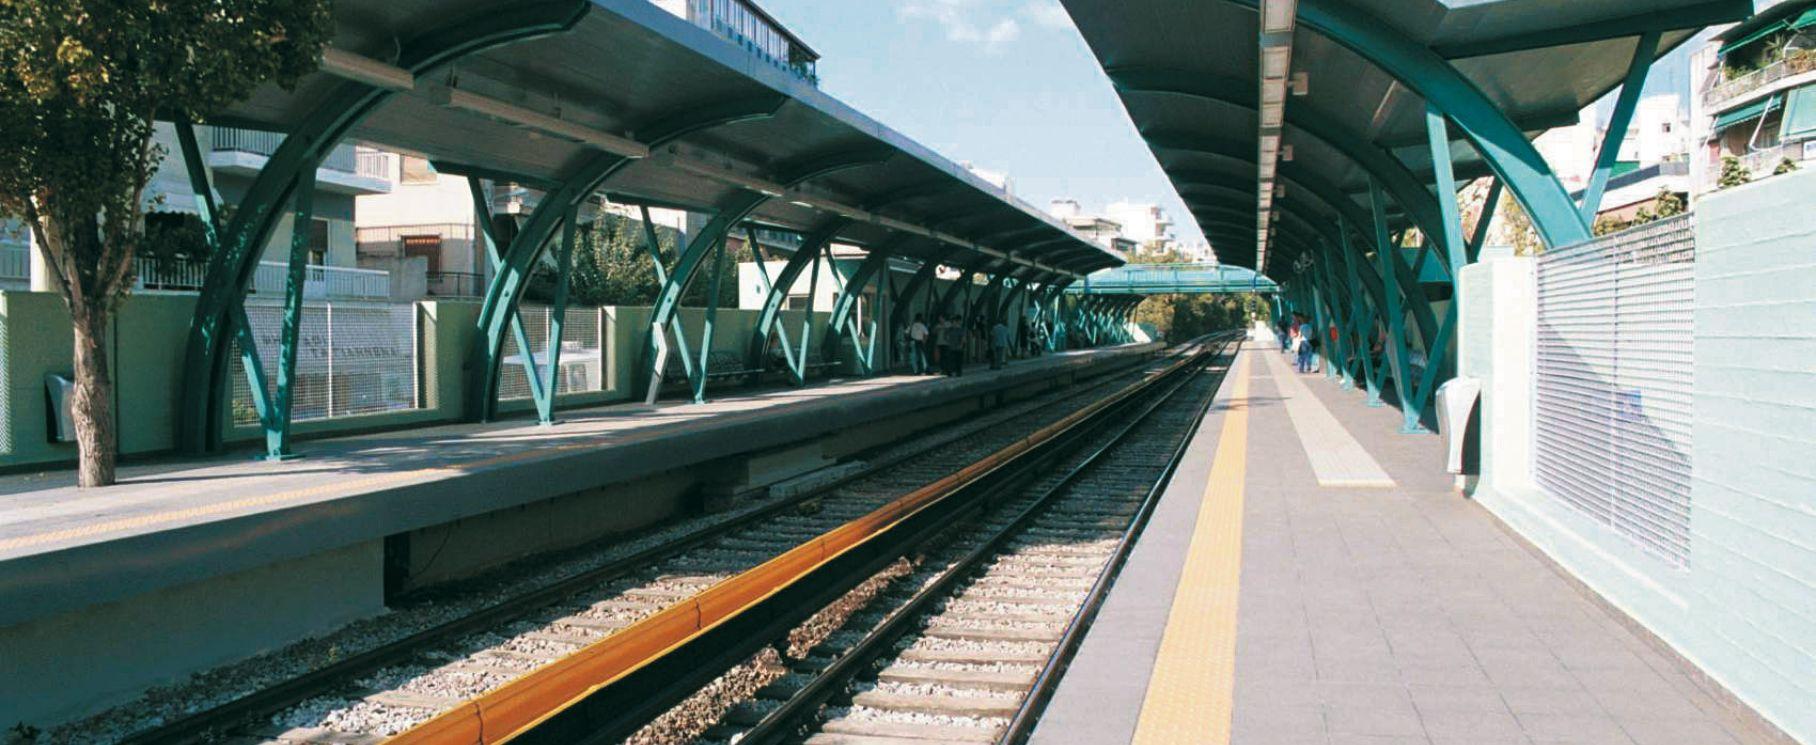 Ristrutturazione Stazioni Ferroviarie | Casalgrande Padana